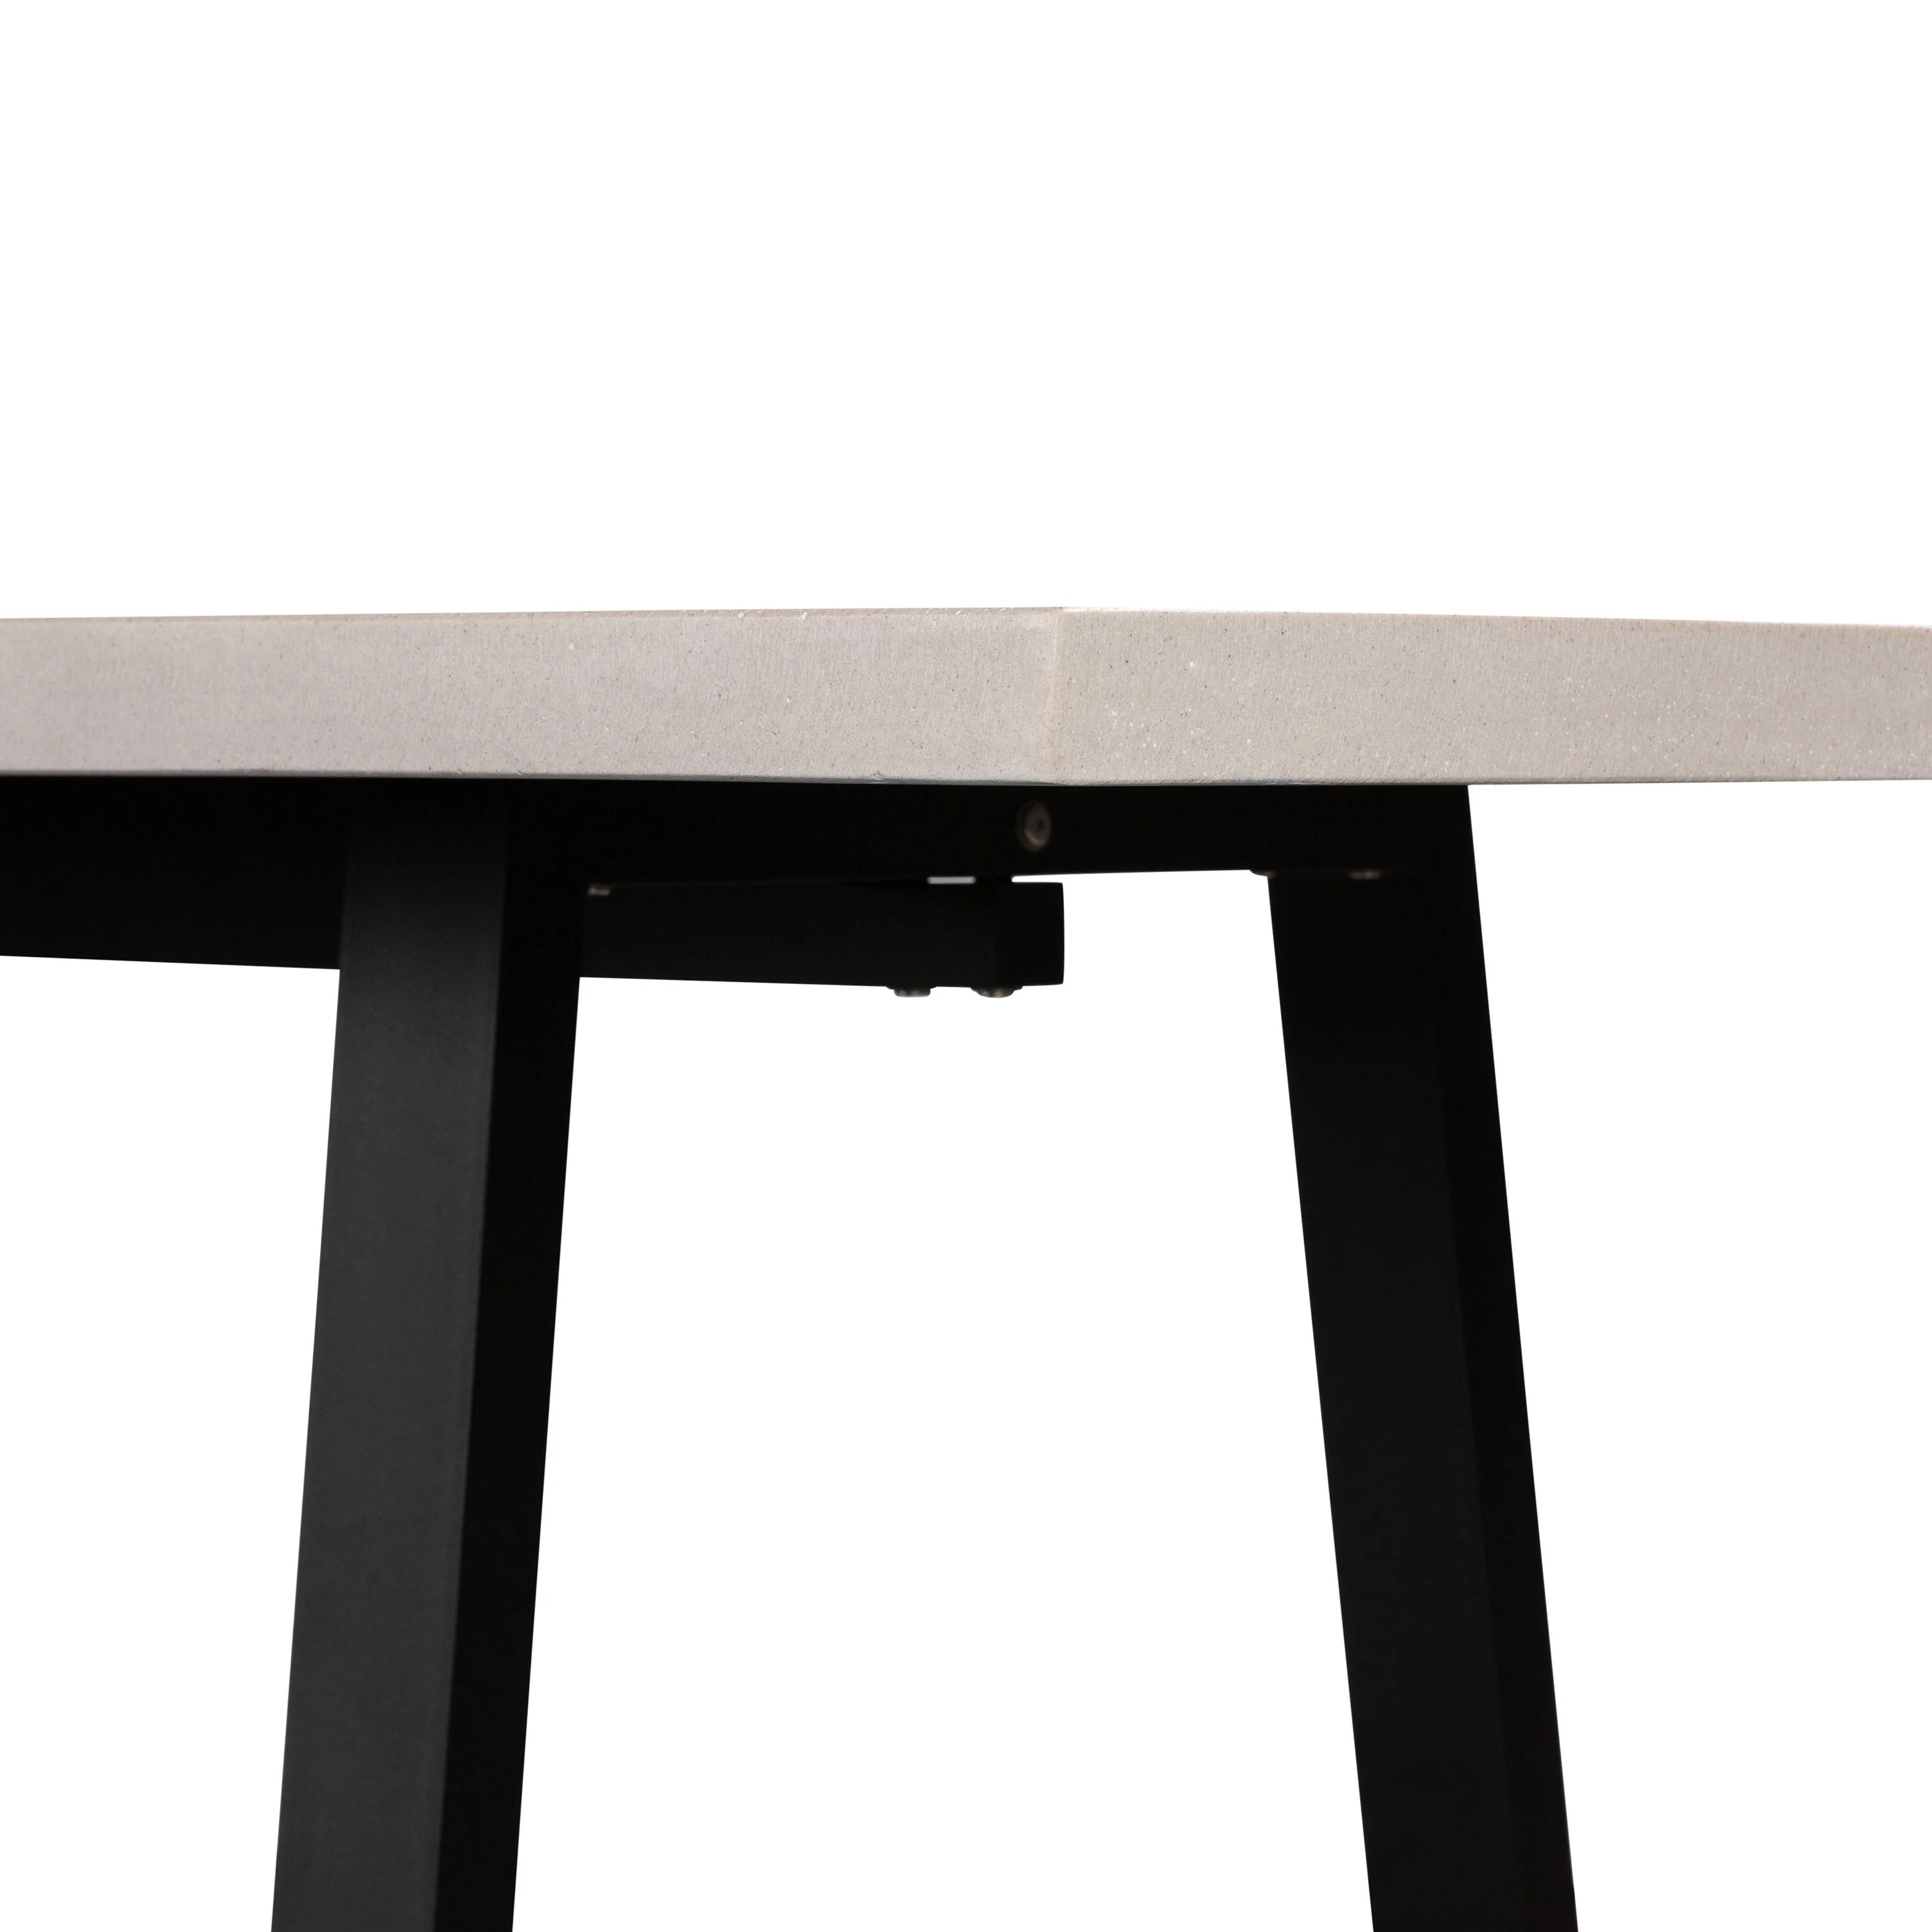 Sierra Rectangular Dining Table (Beige with Black Metal Legs).